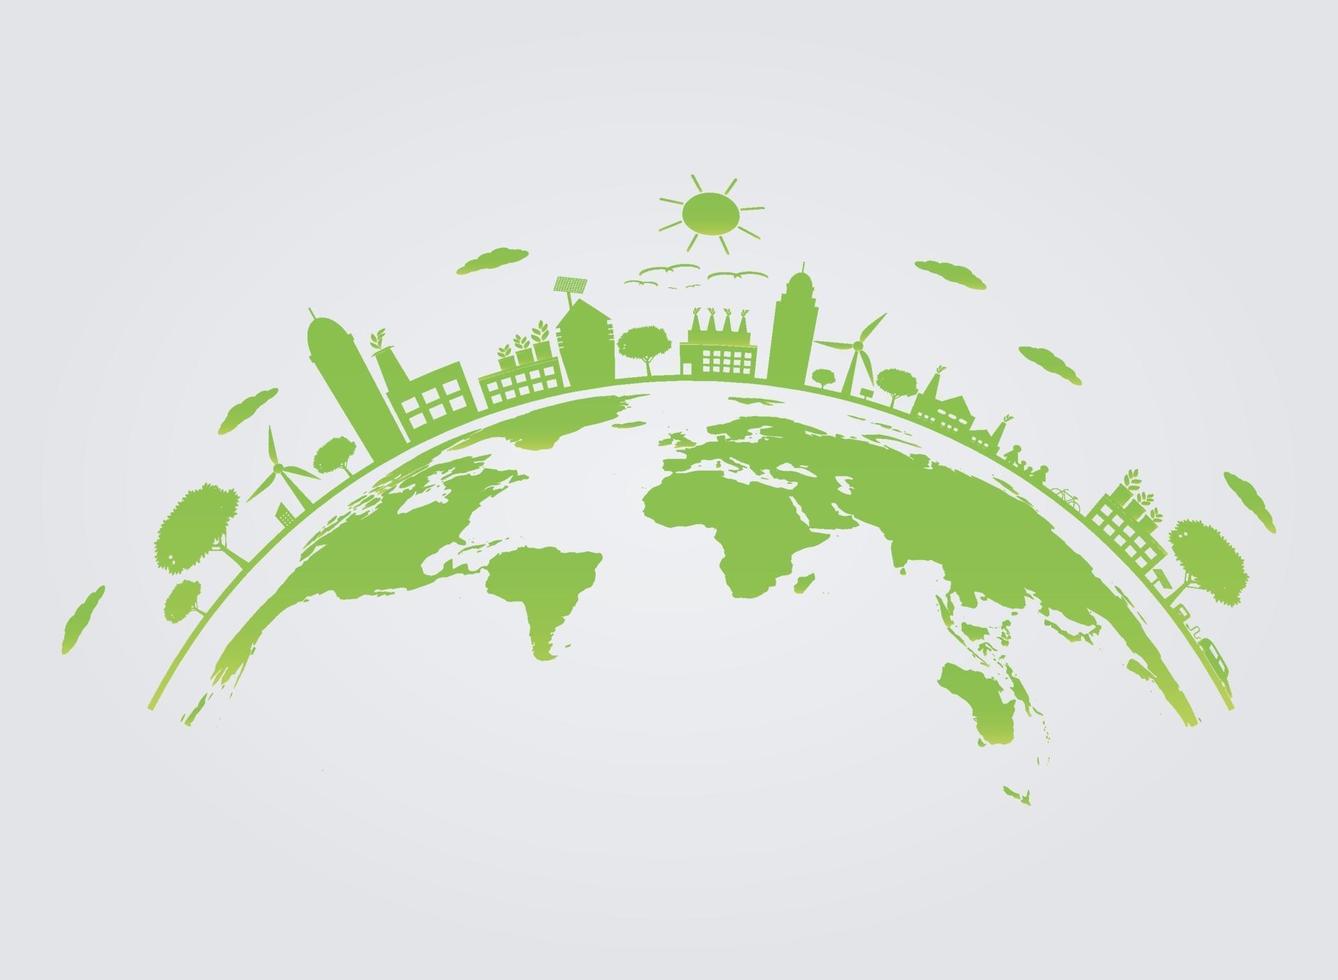 ecologie. groene steden helpen de wereld met milieuvriendelijke conceptideeën. vector illustratie